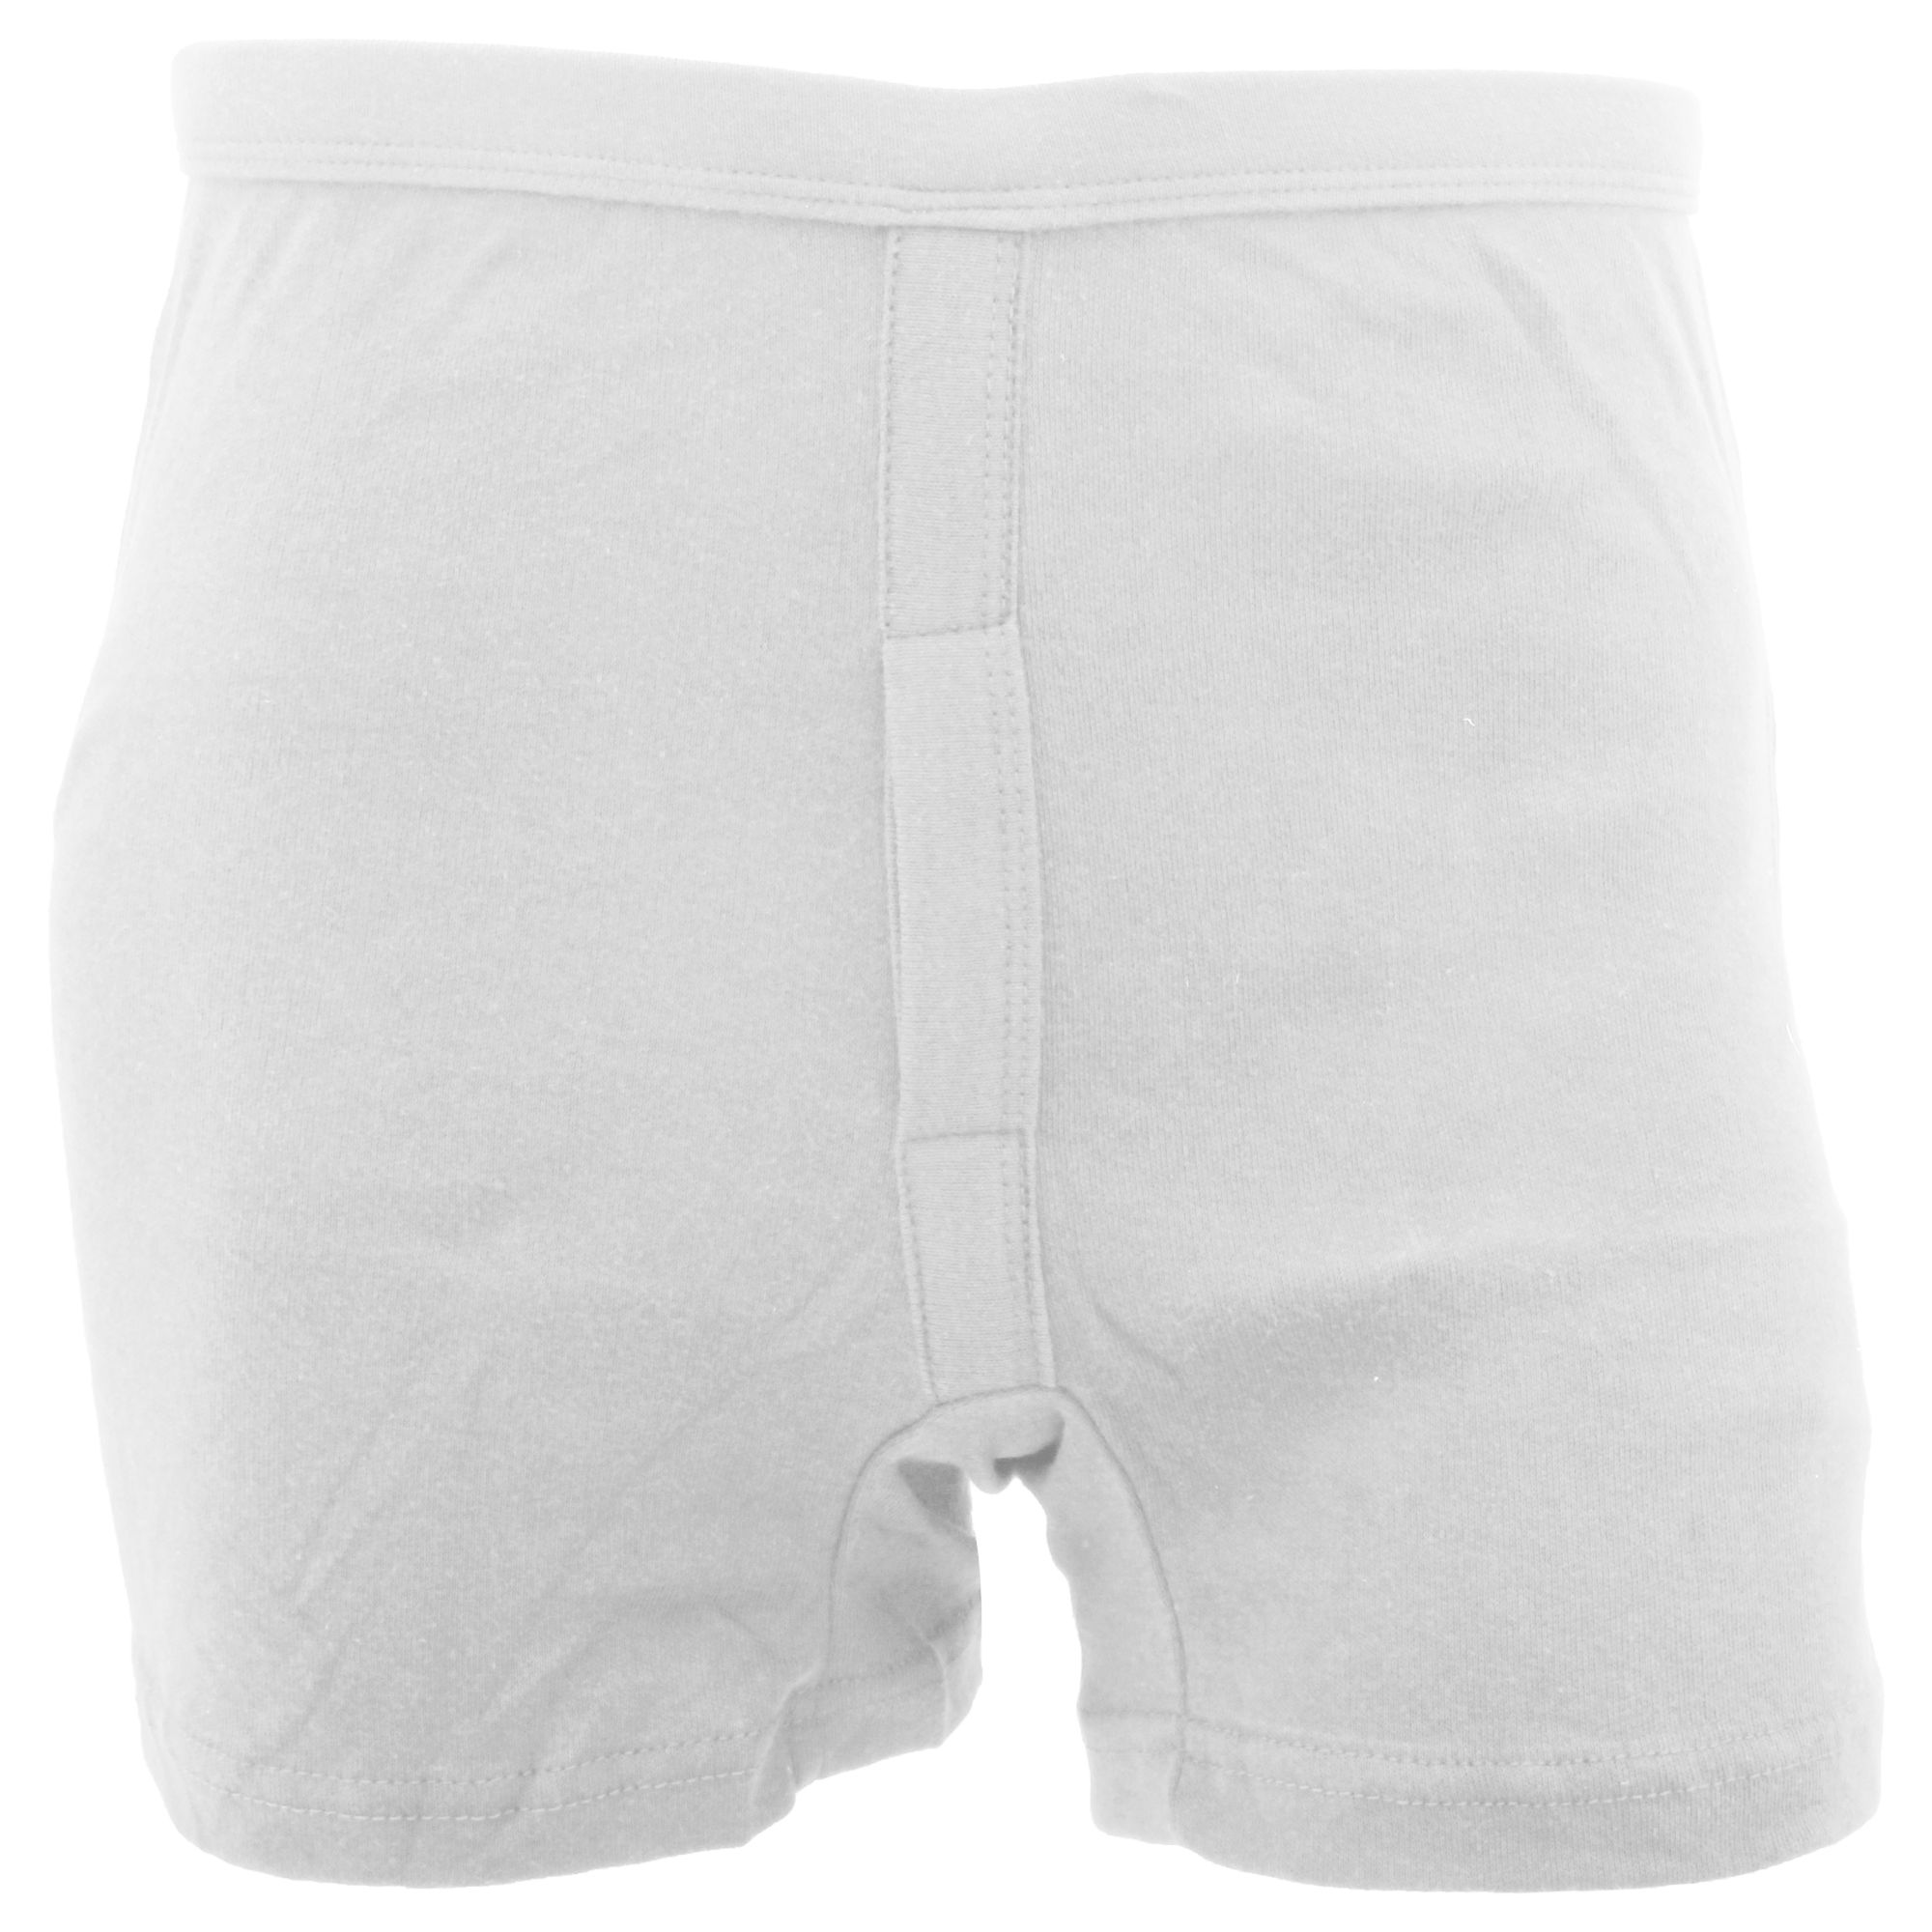 FLOSO Mens 100% Cotton Interlock Trunk Underwear (Pack Of 2) (White)